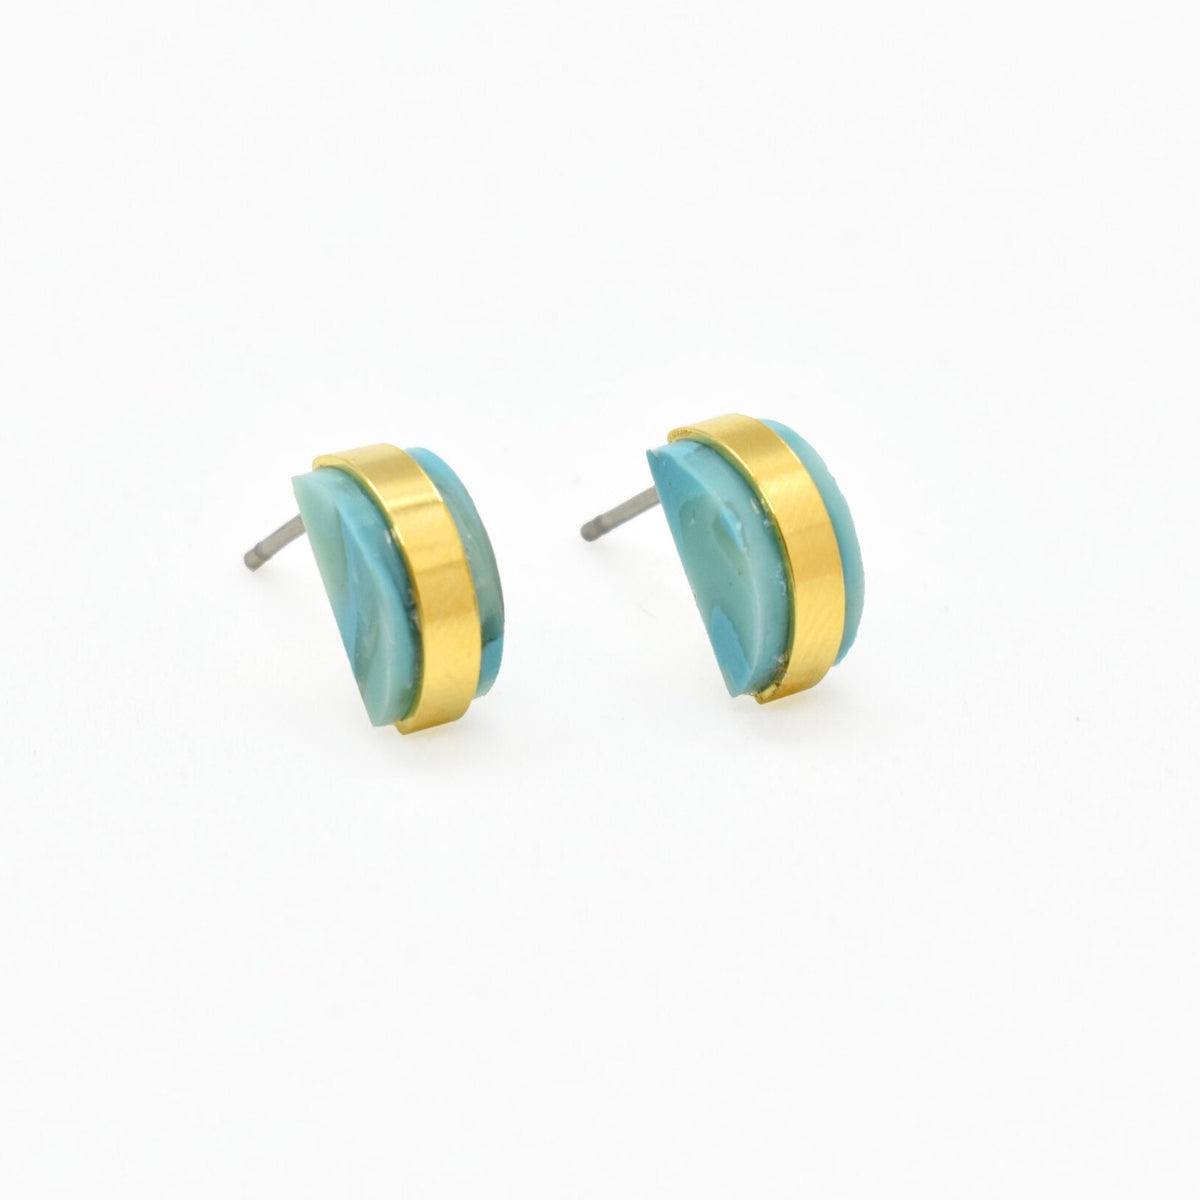 SALE The Studio Stud Earrings: Aquamarine